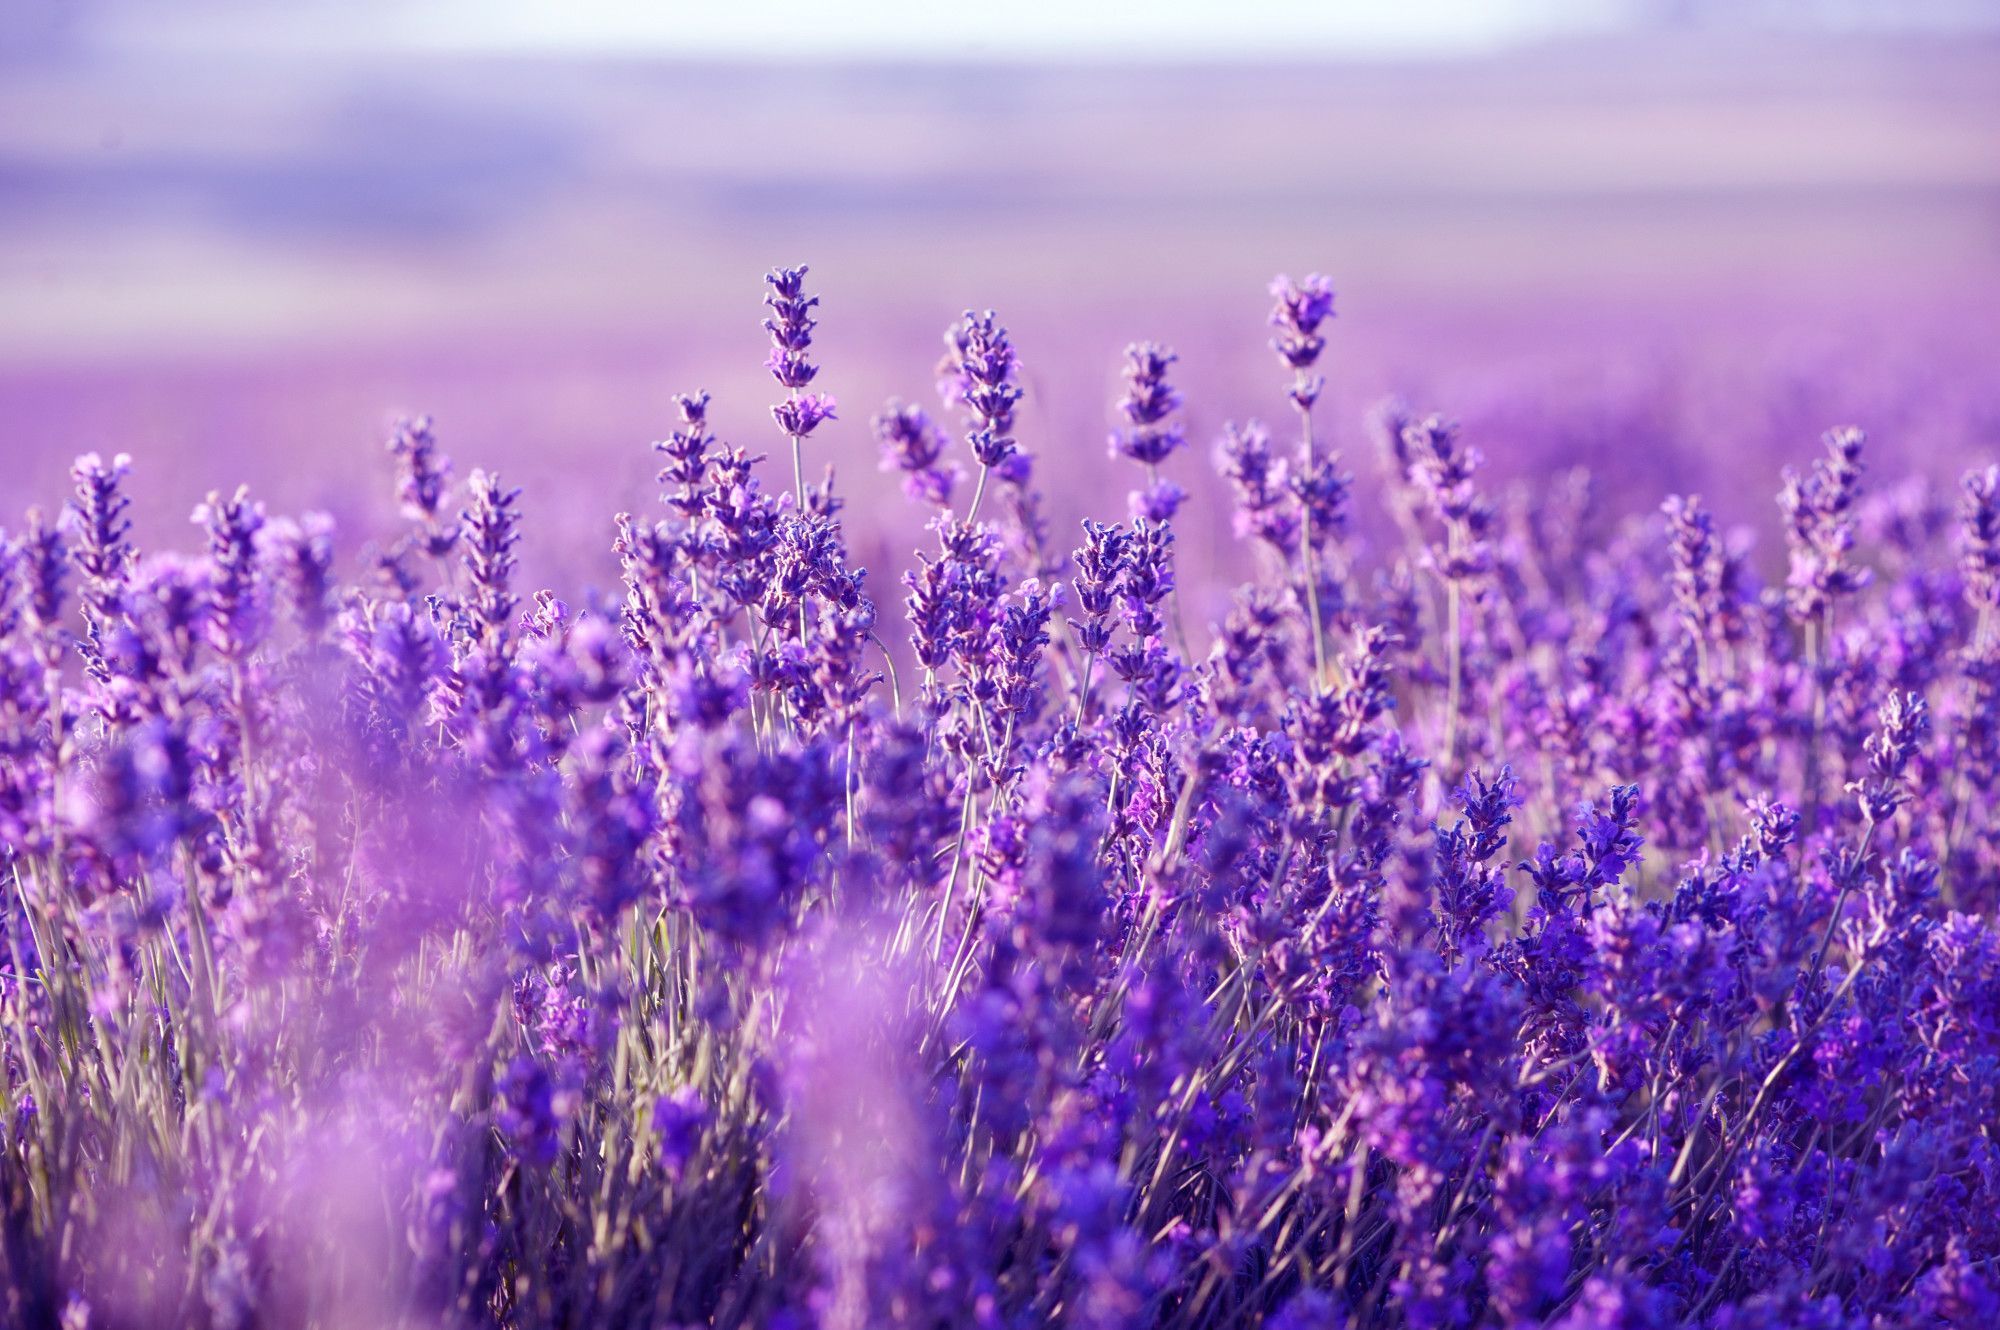 presentation background lavender